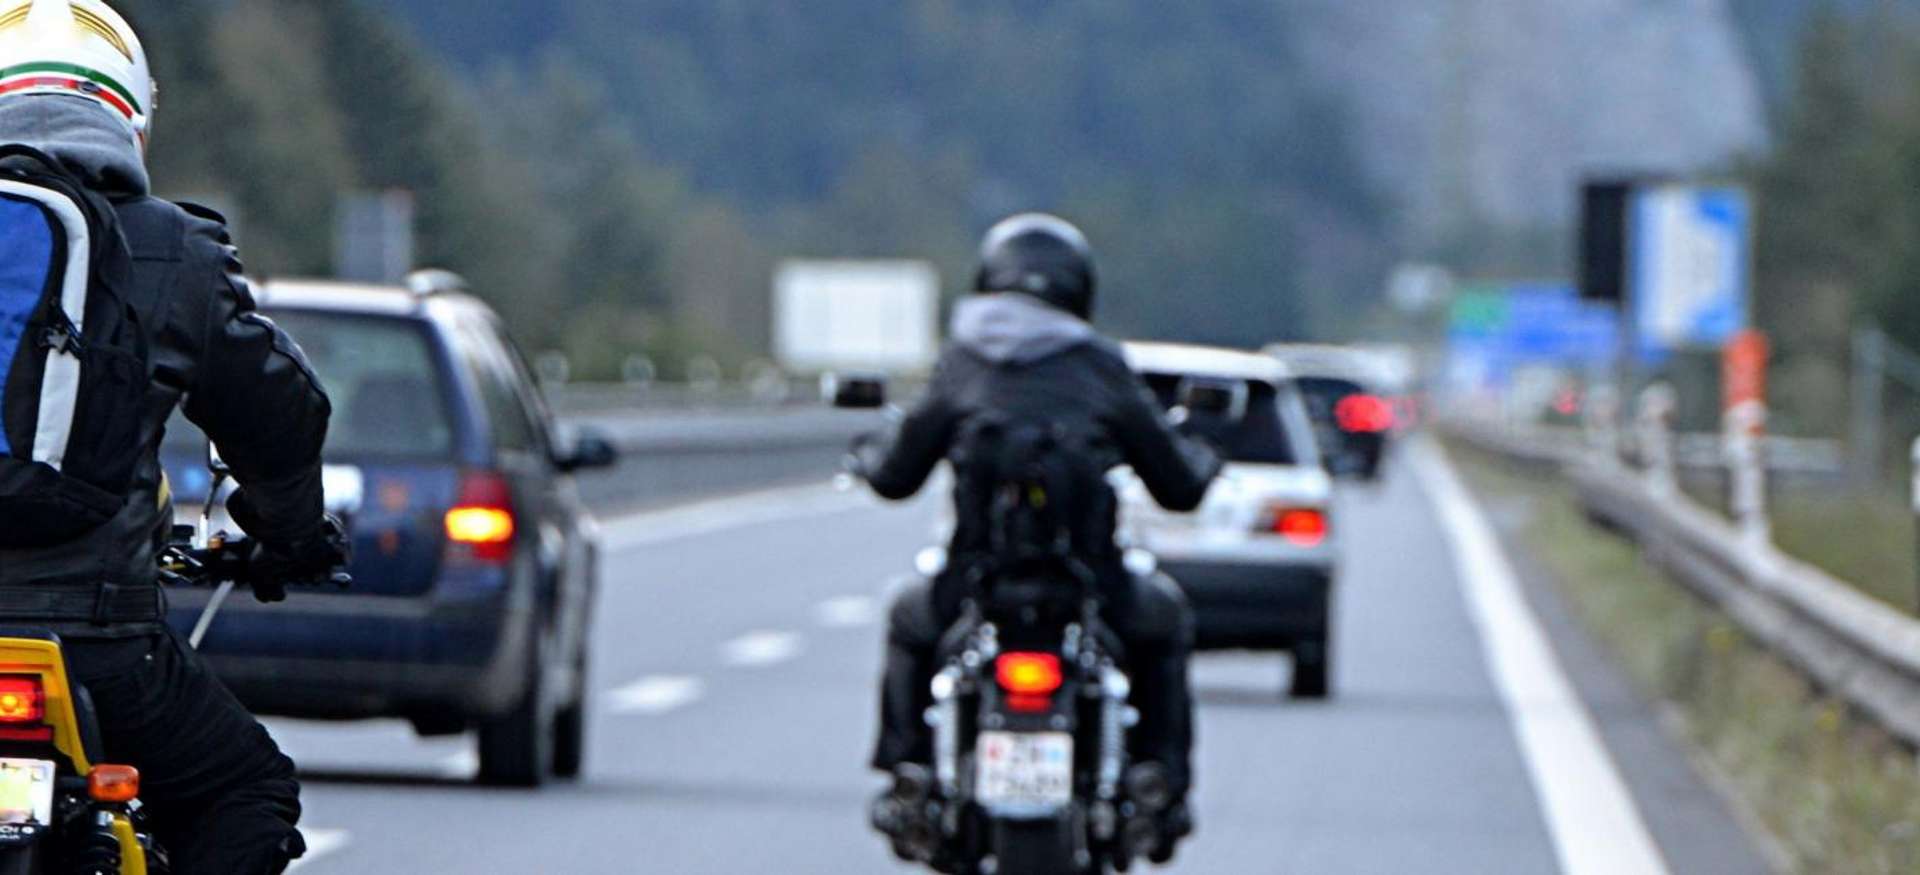 Conduite en moto sur autoroute : des conseils pour rouler en toute sécurité